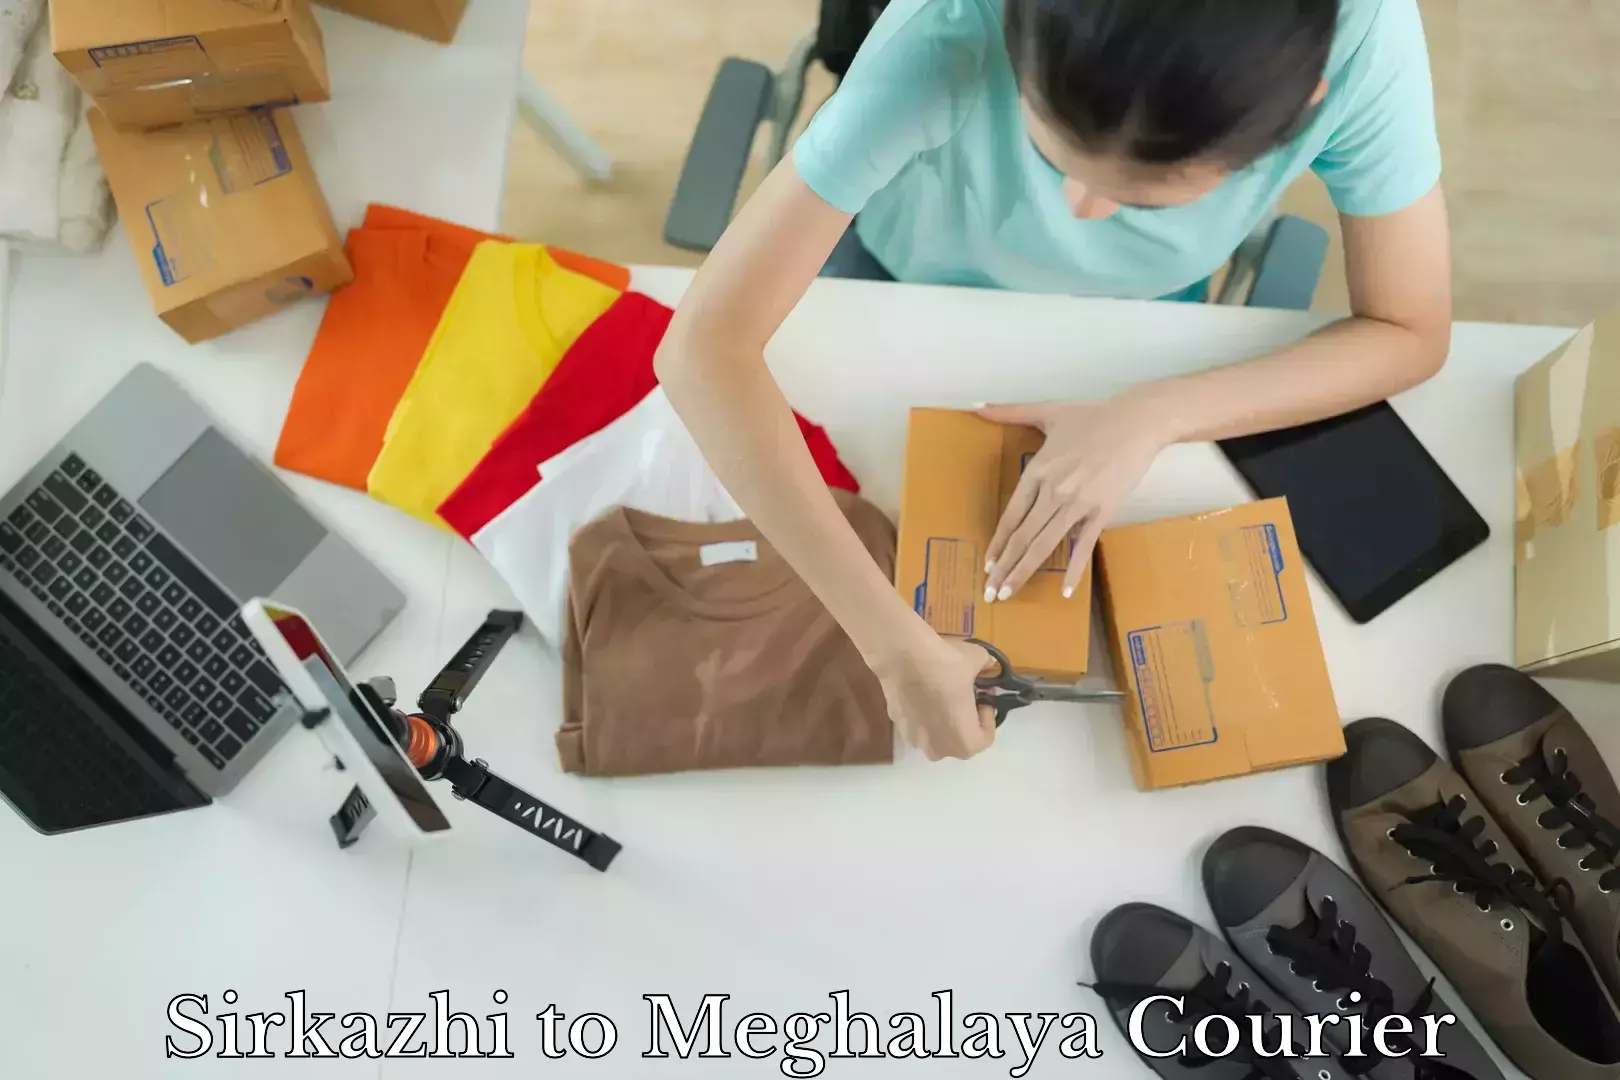 Urgent courier needs Sirkazhi to Meghalaya